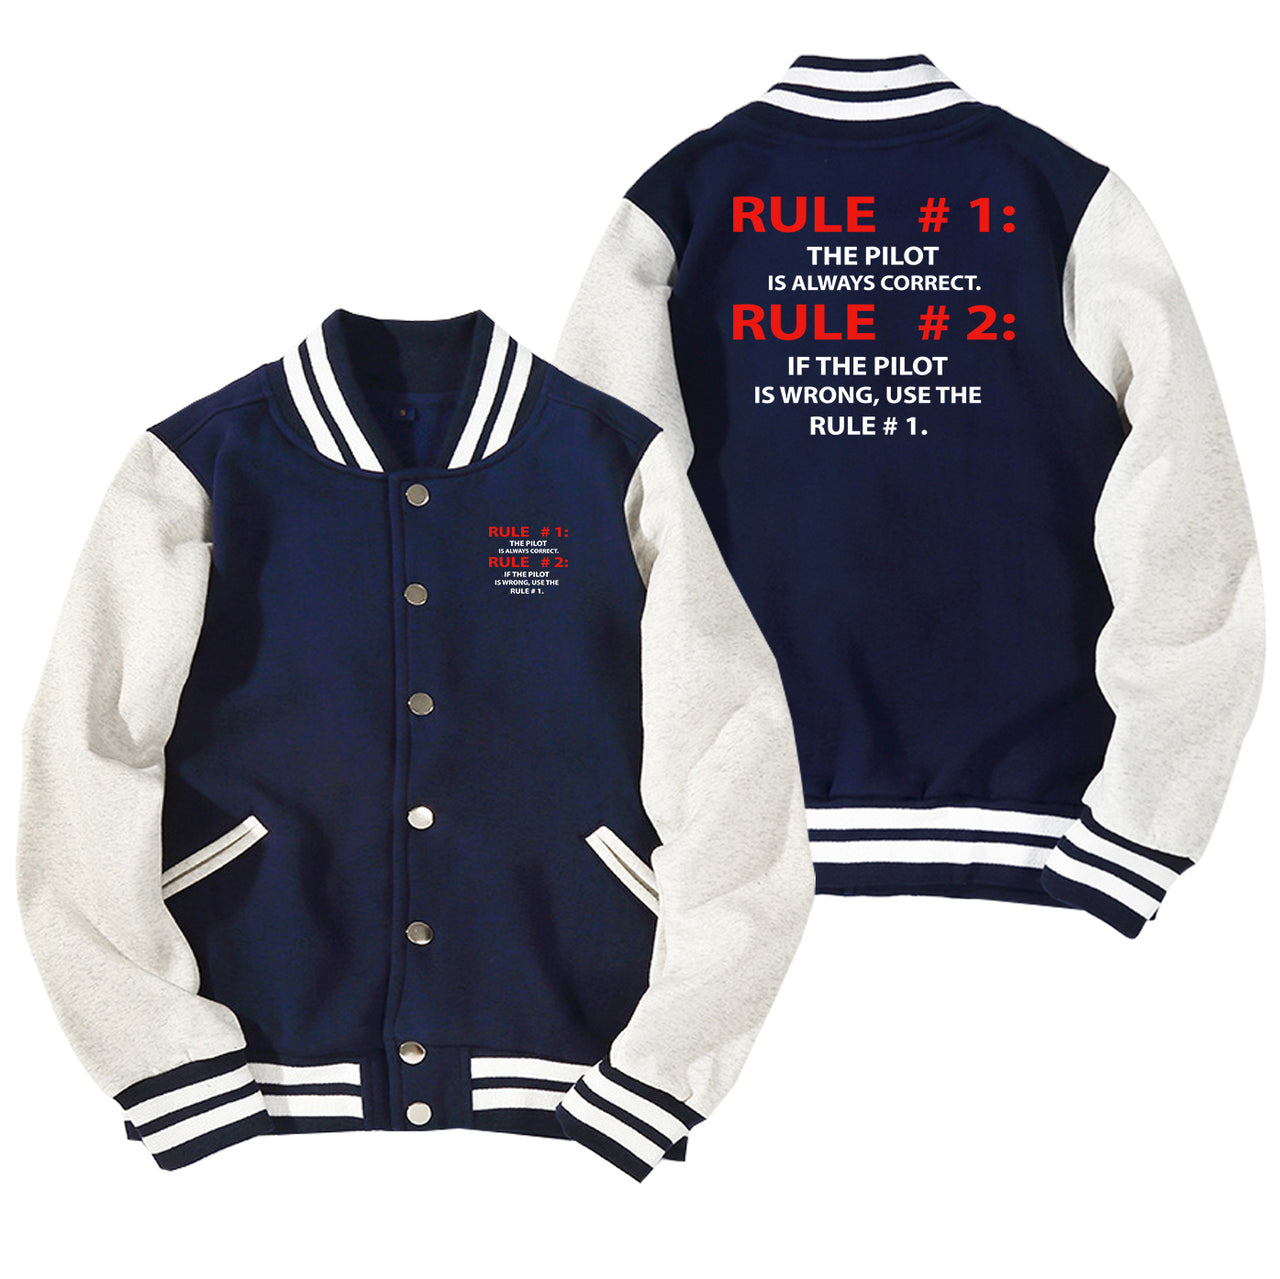 Rule 1 - Pilot is Always Correct Designed Baseball Style Jackets